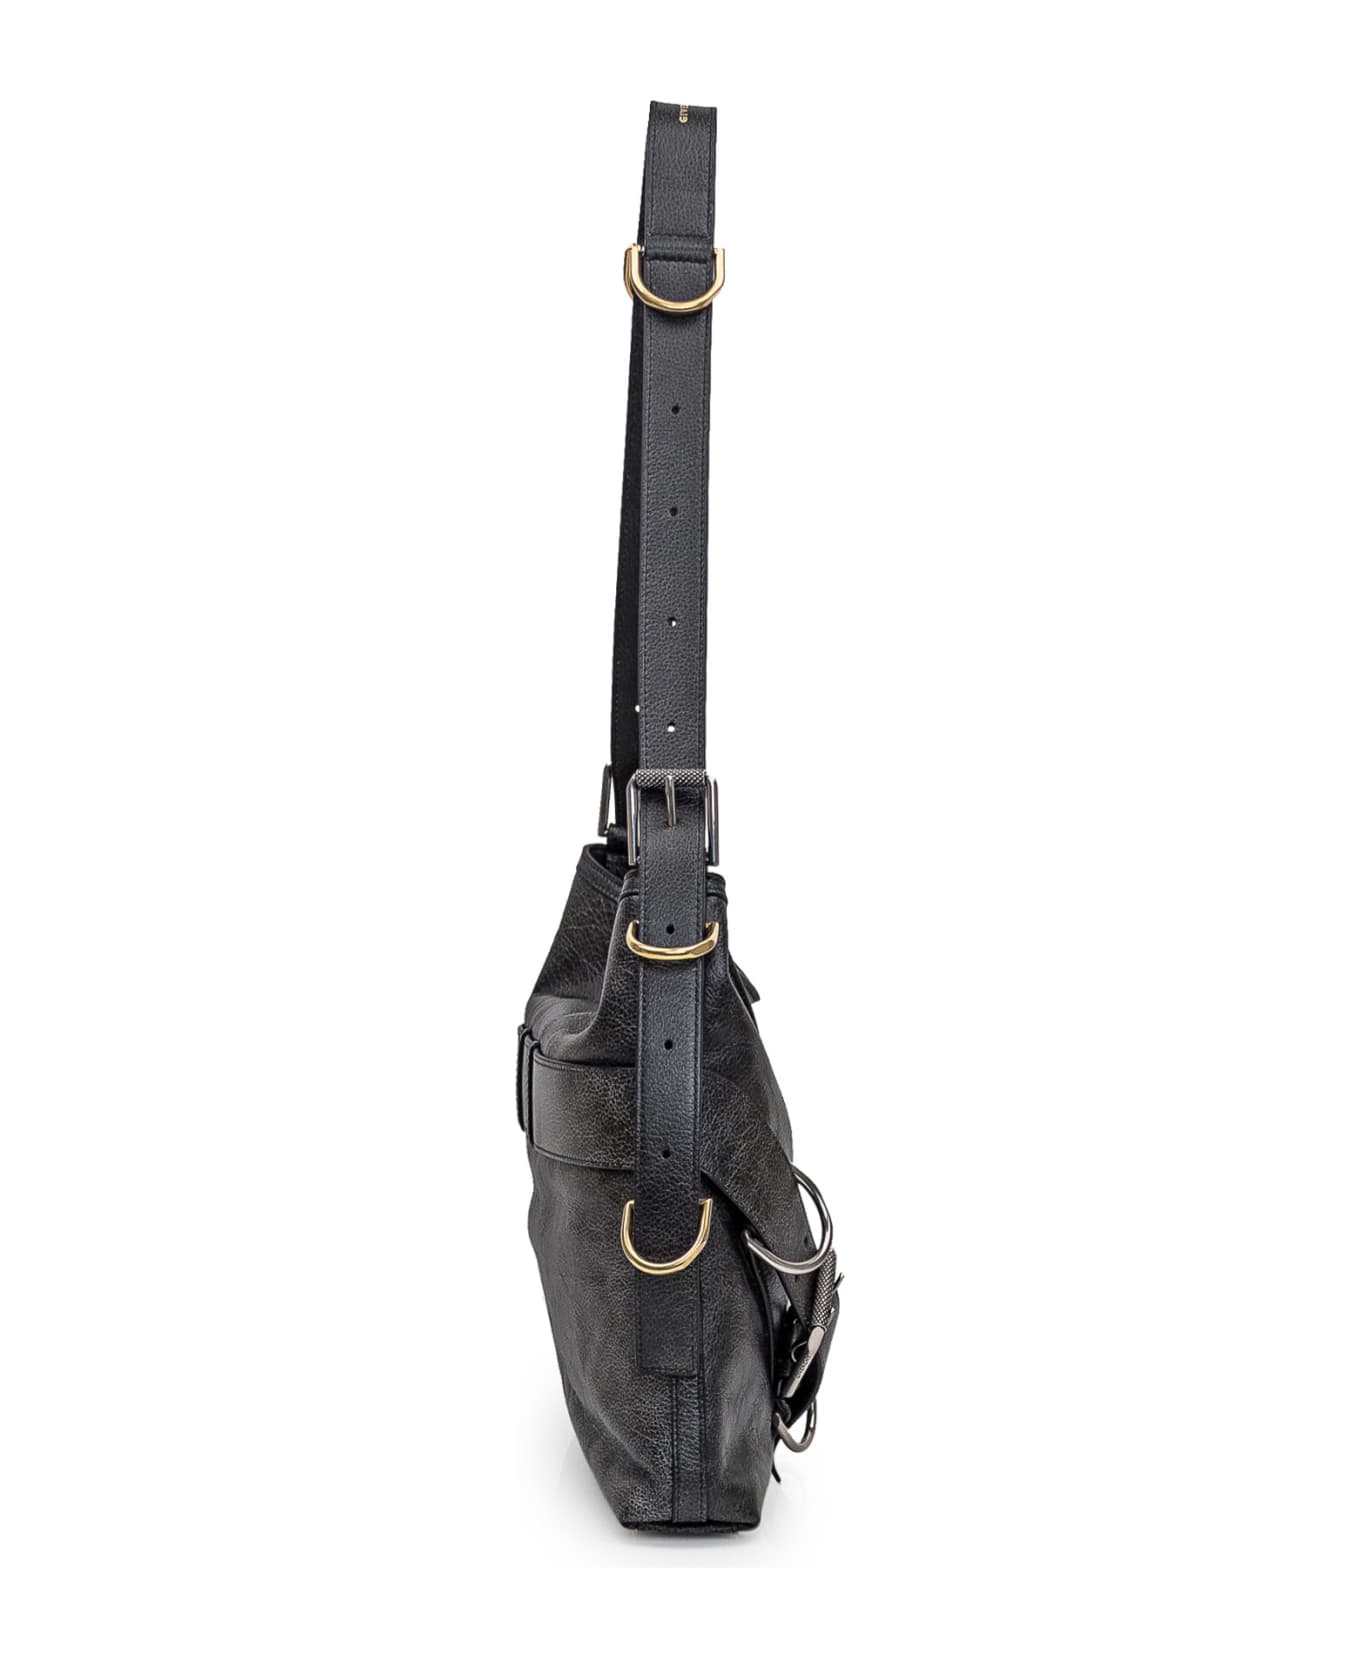 Givenchy Voyou Shoulder Bag - Black トートバッグ